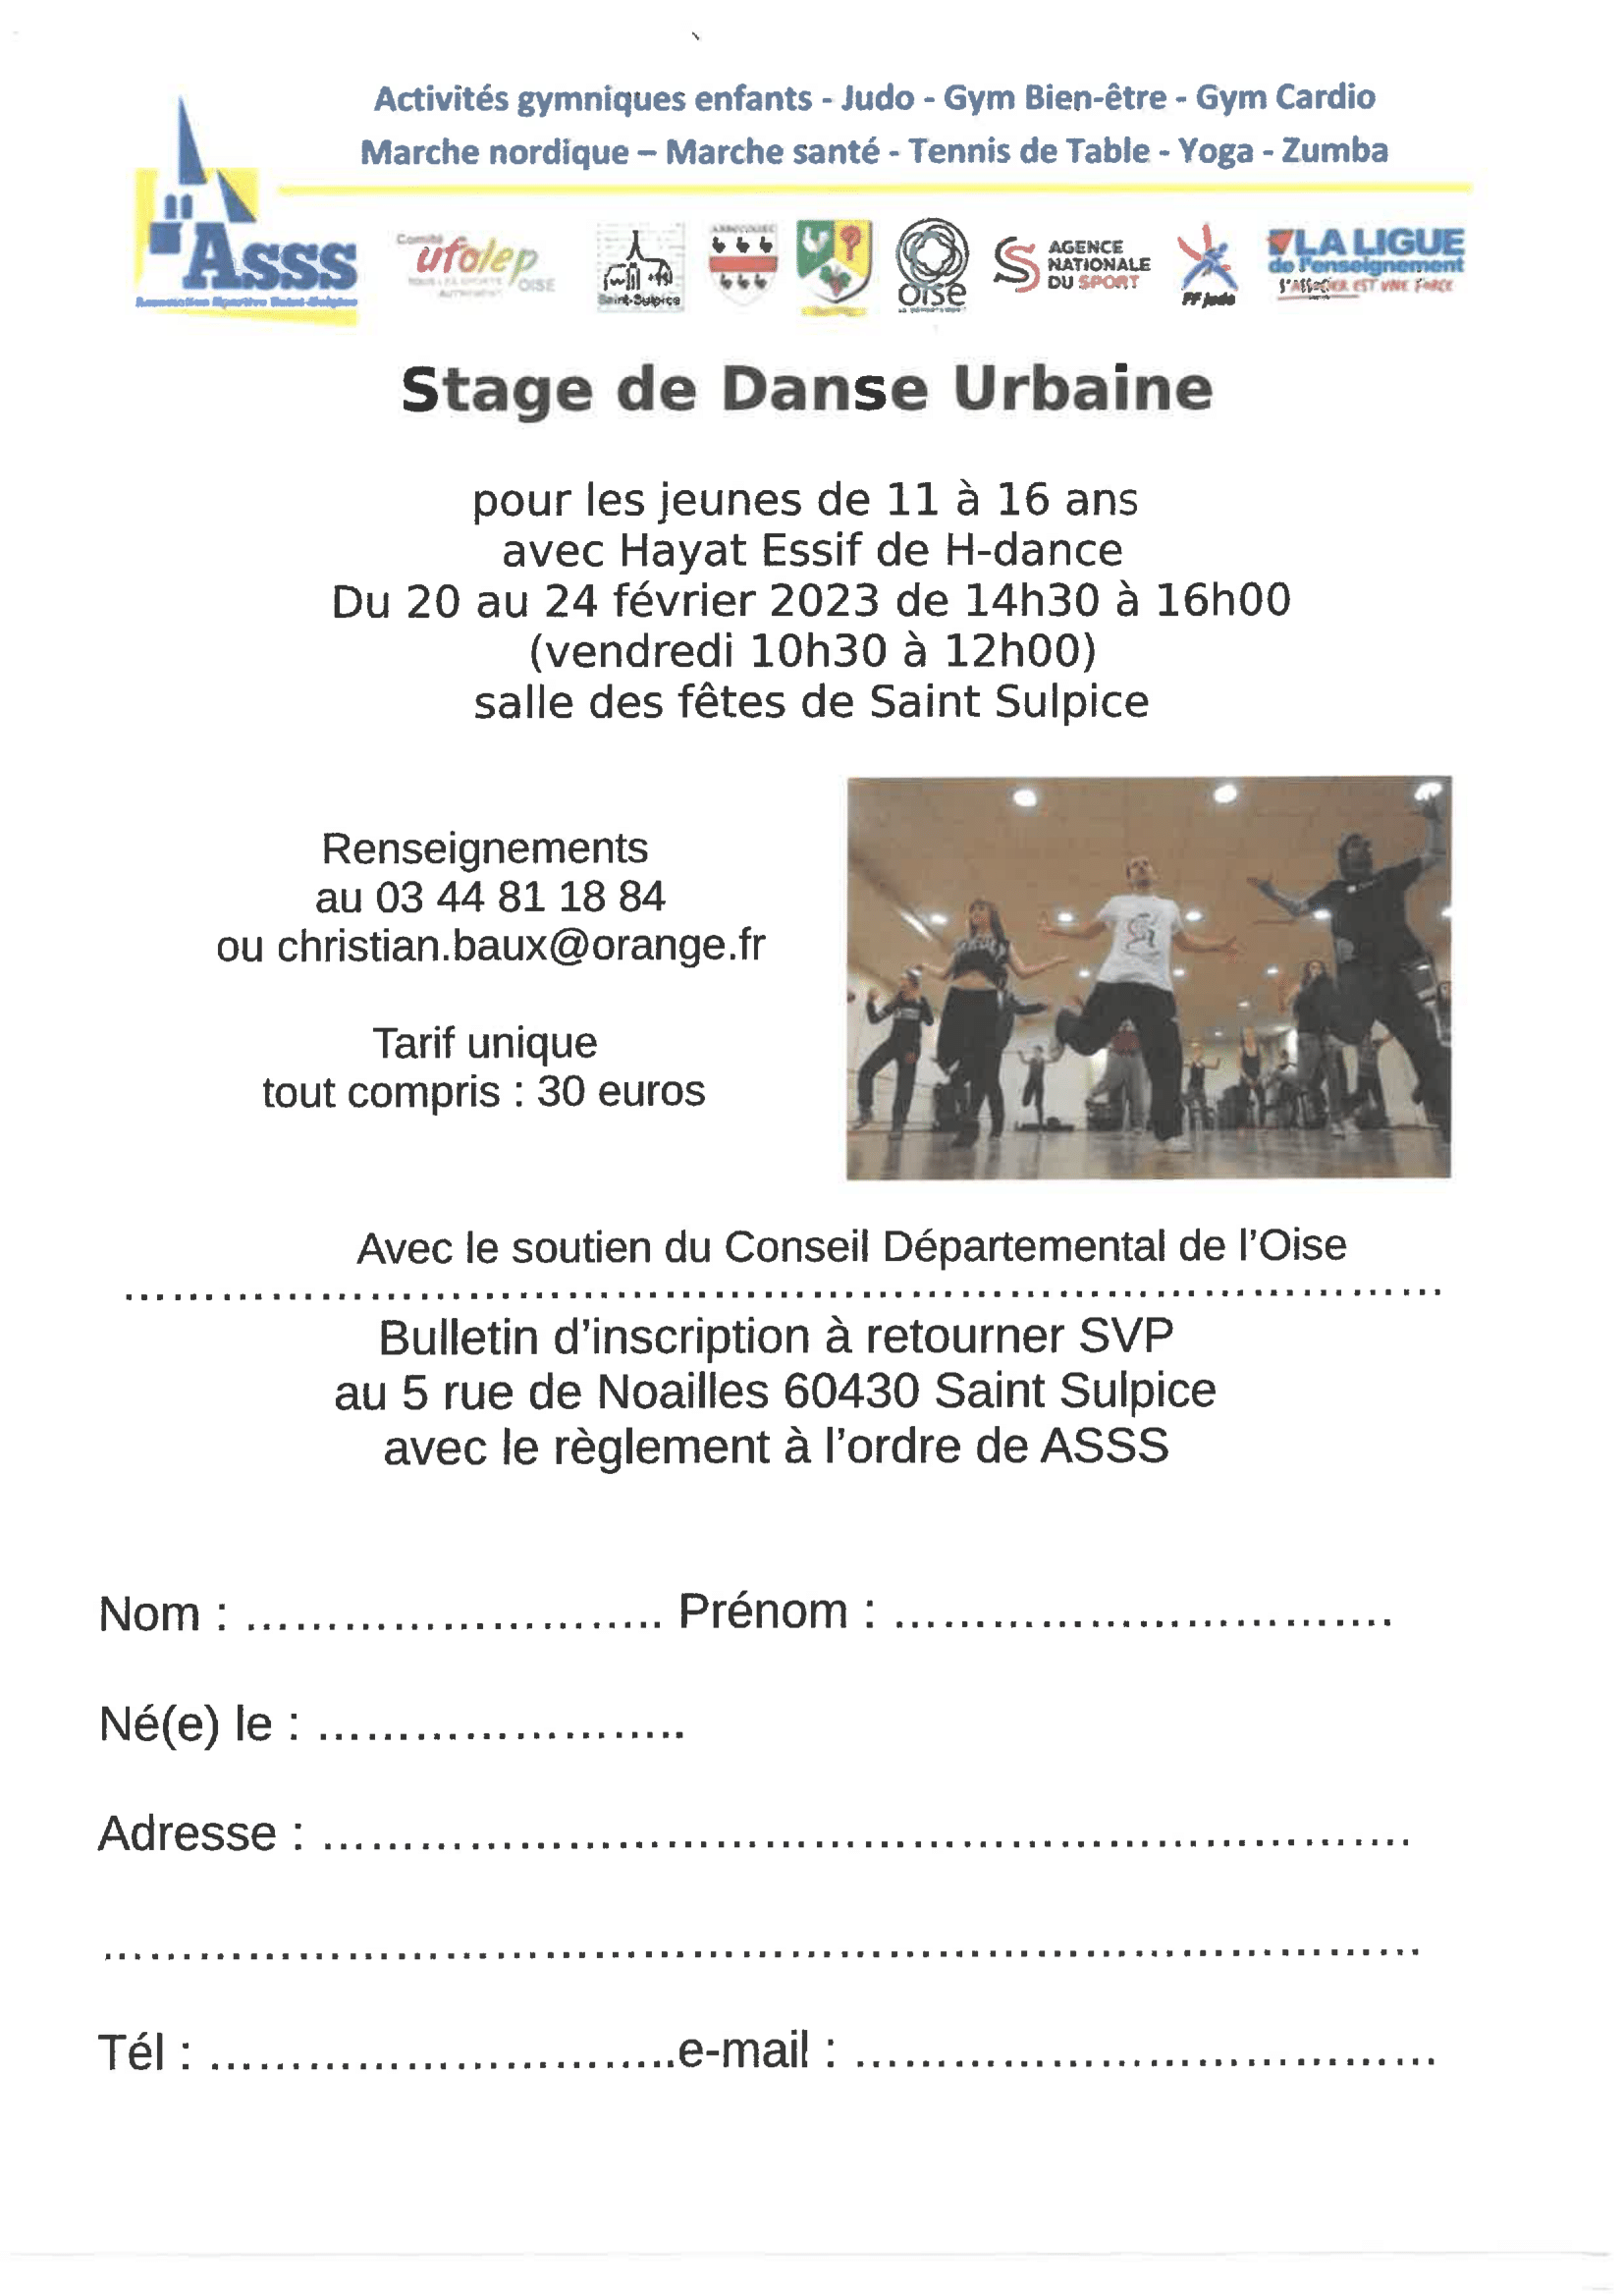 STAGE   DE DANSE URBAINE-1.png